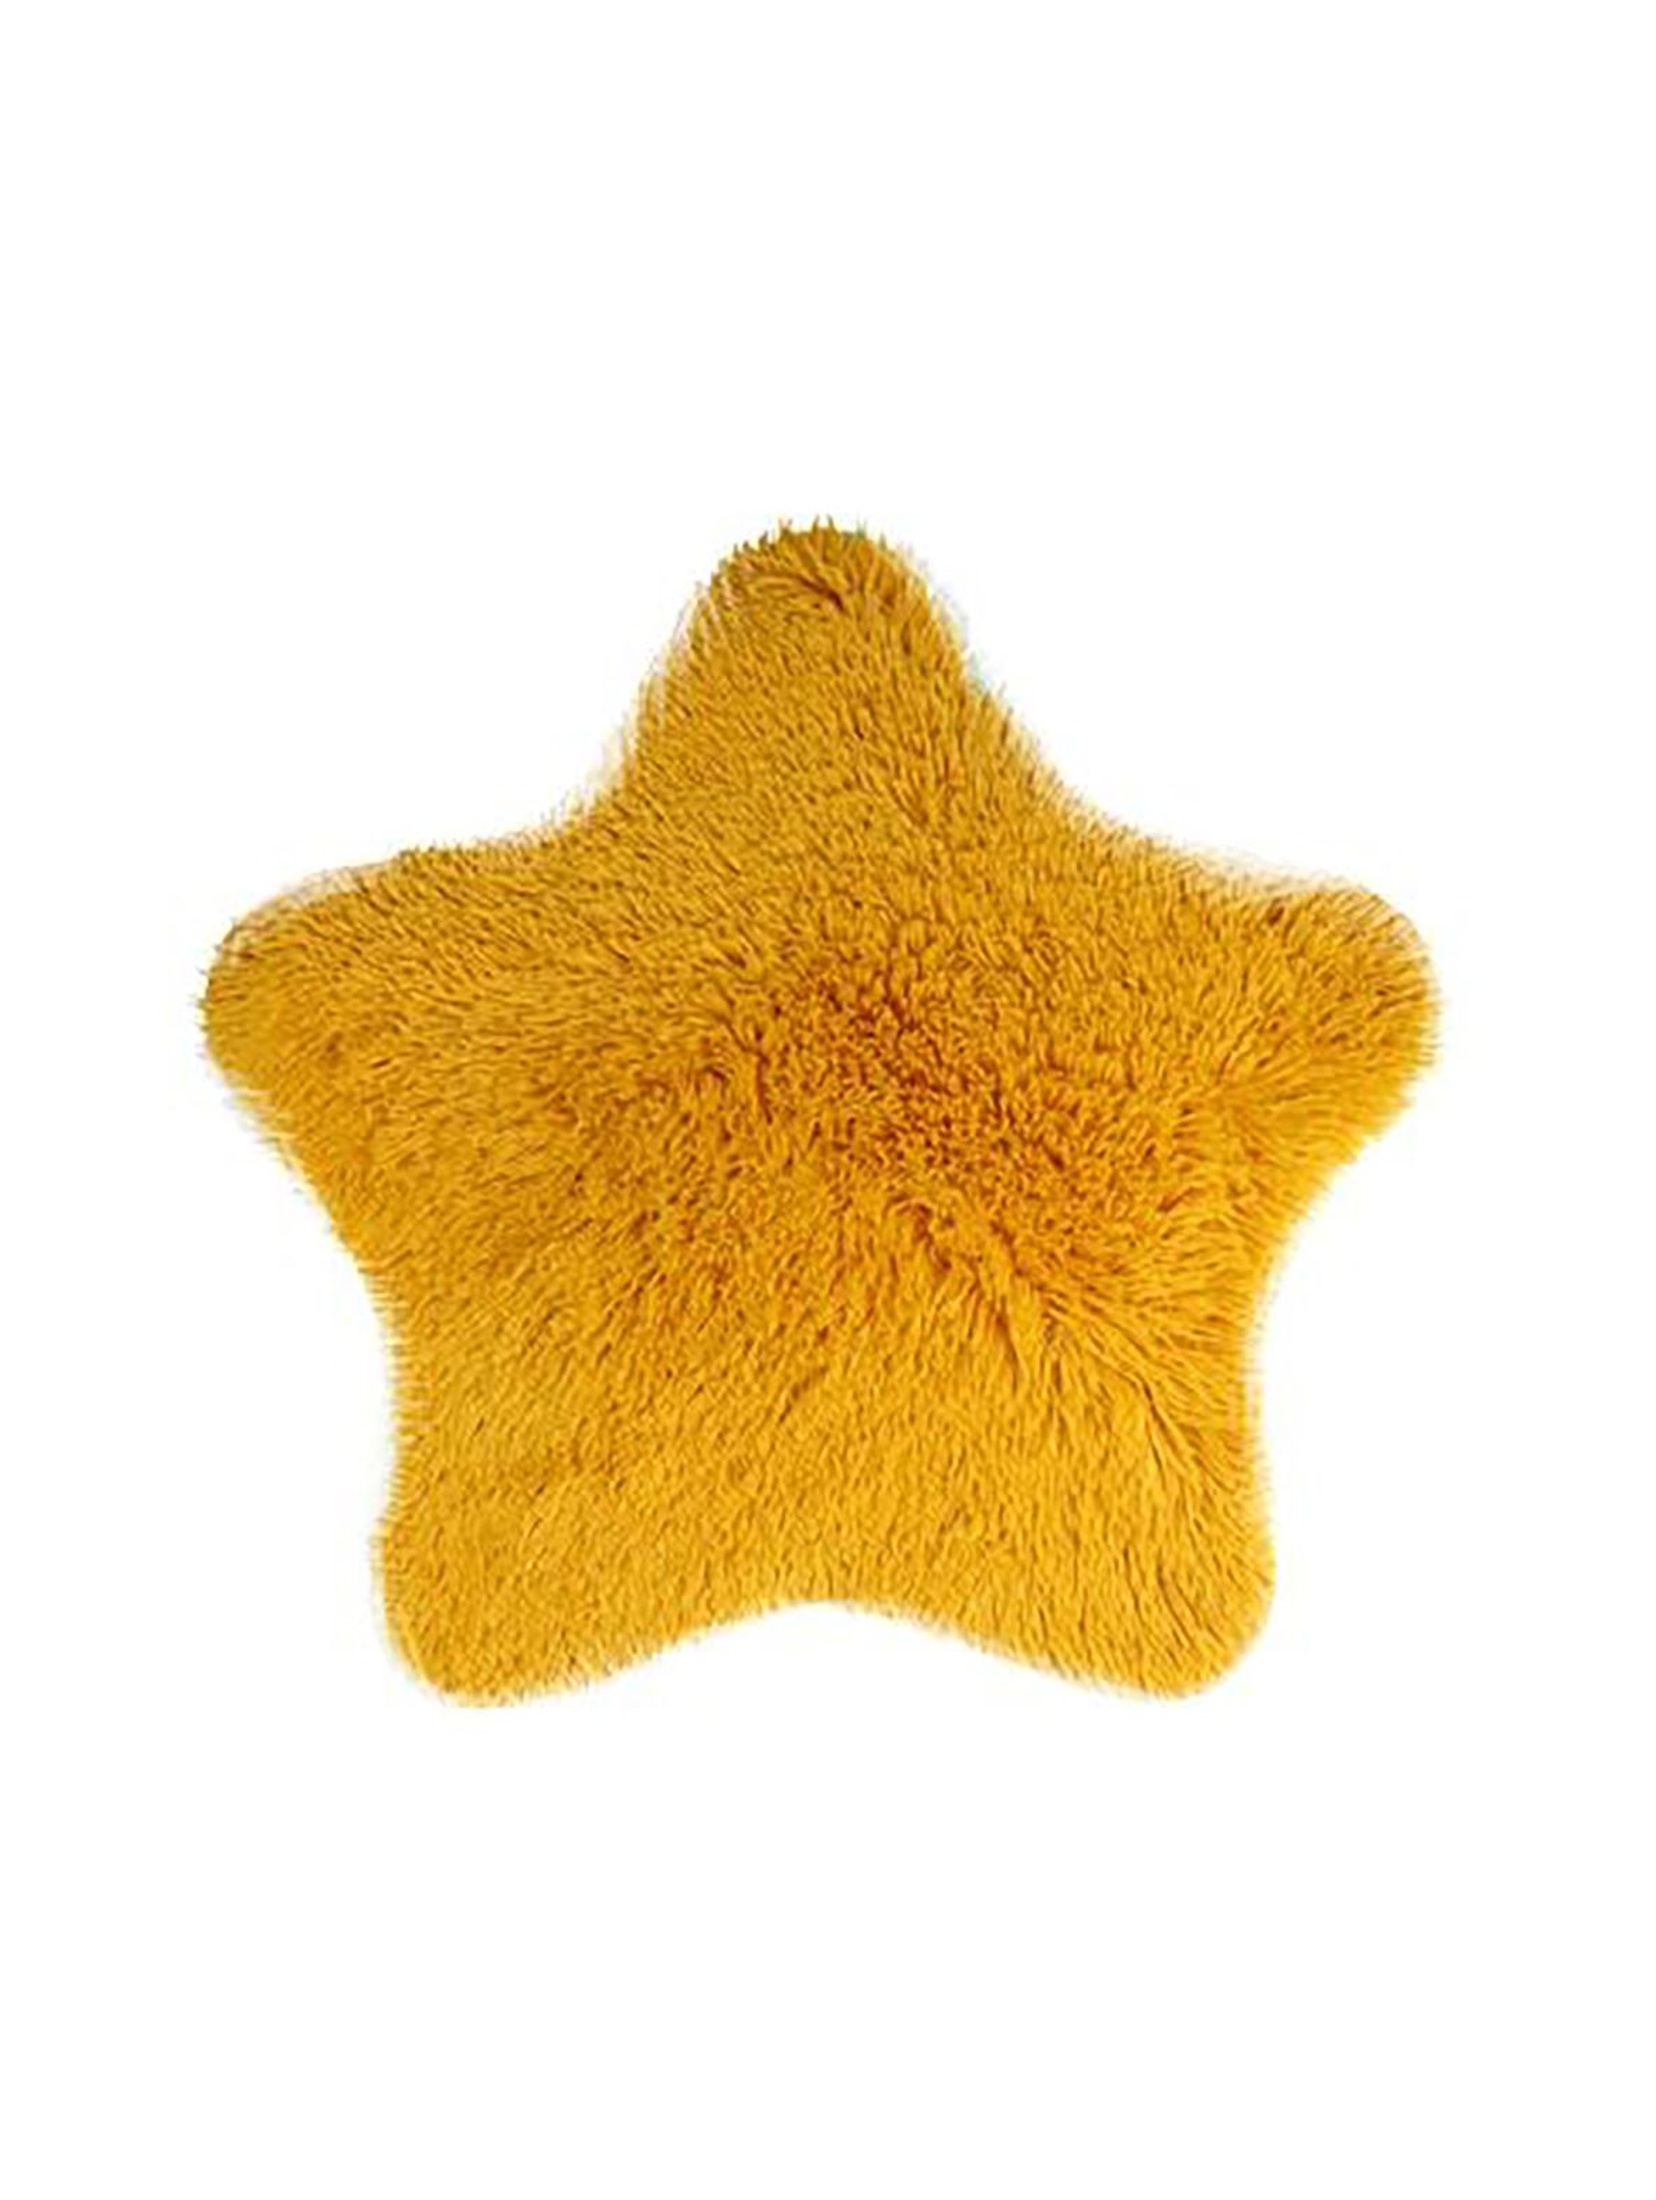 Dywanik SOFT STAR eko futro żółty 60x60 cm